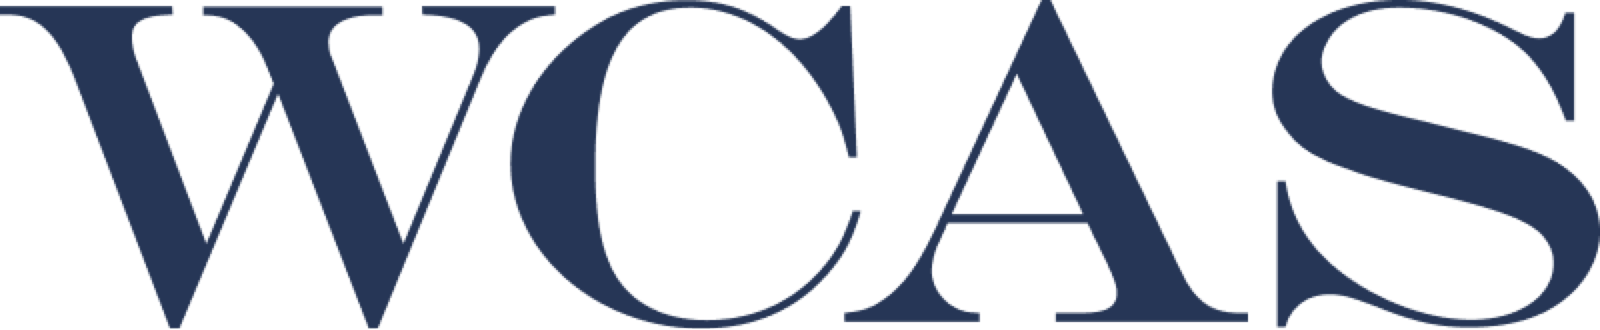 WCAS logo